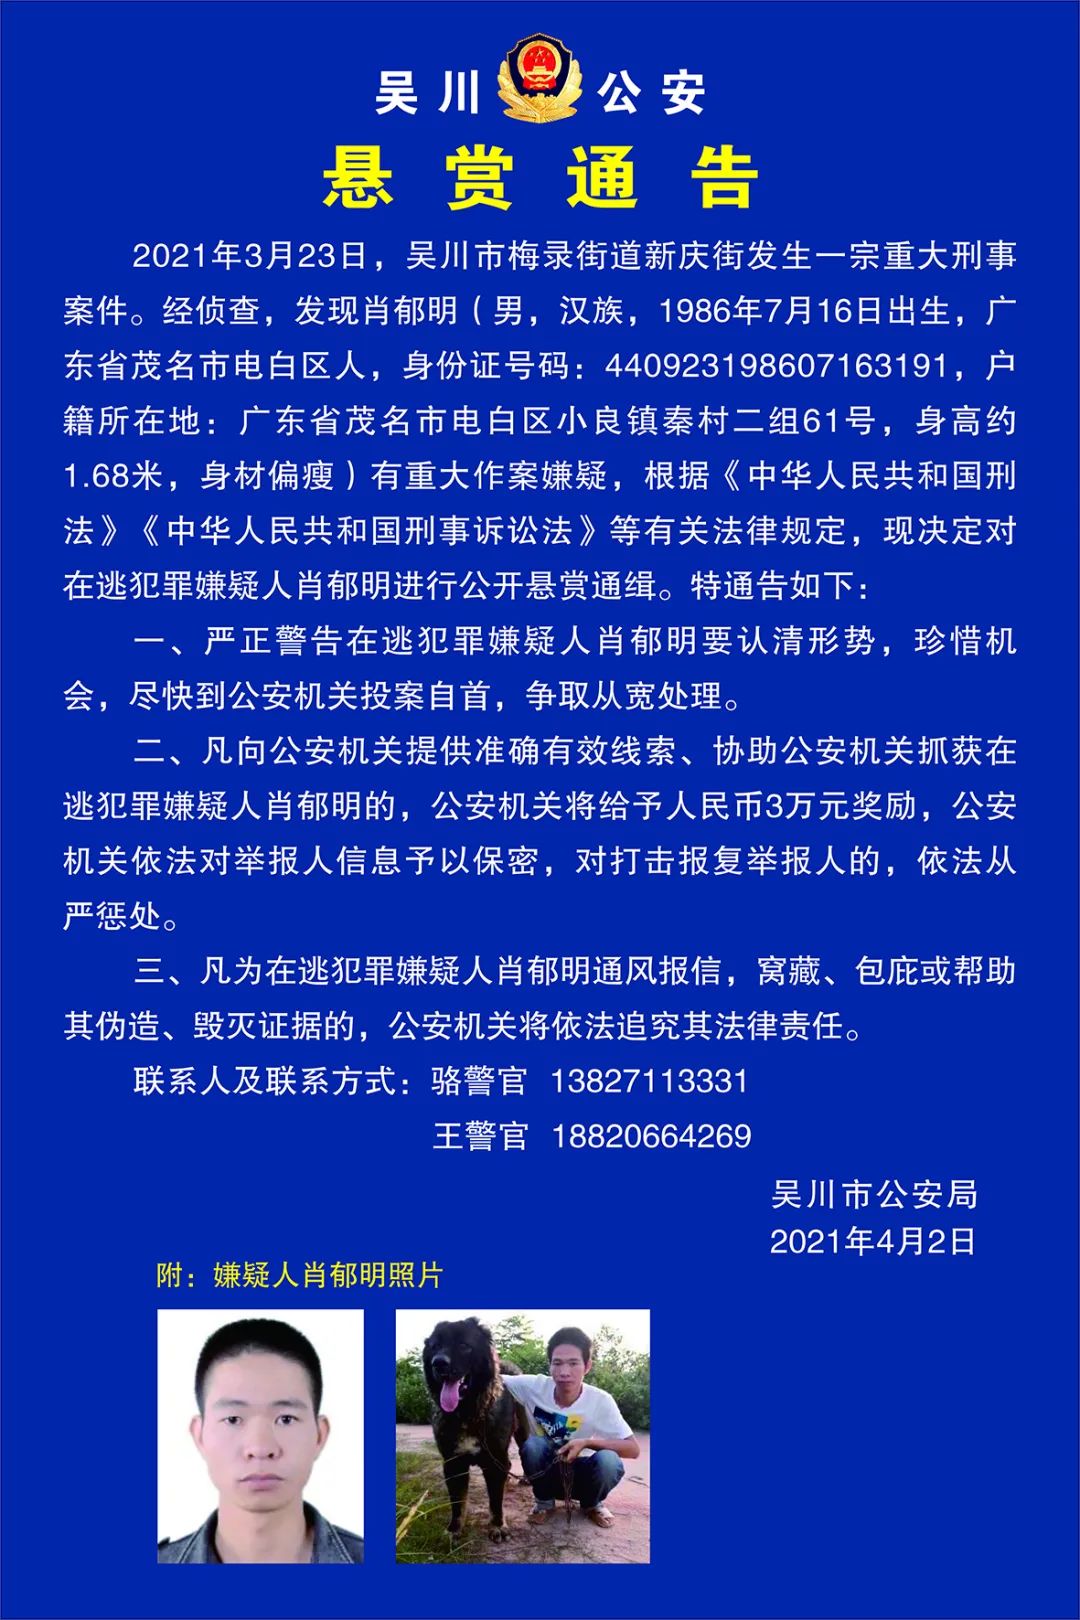 吴川市发生一起重大刑事案件,警方发布悬赏通告